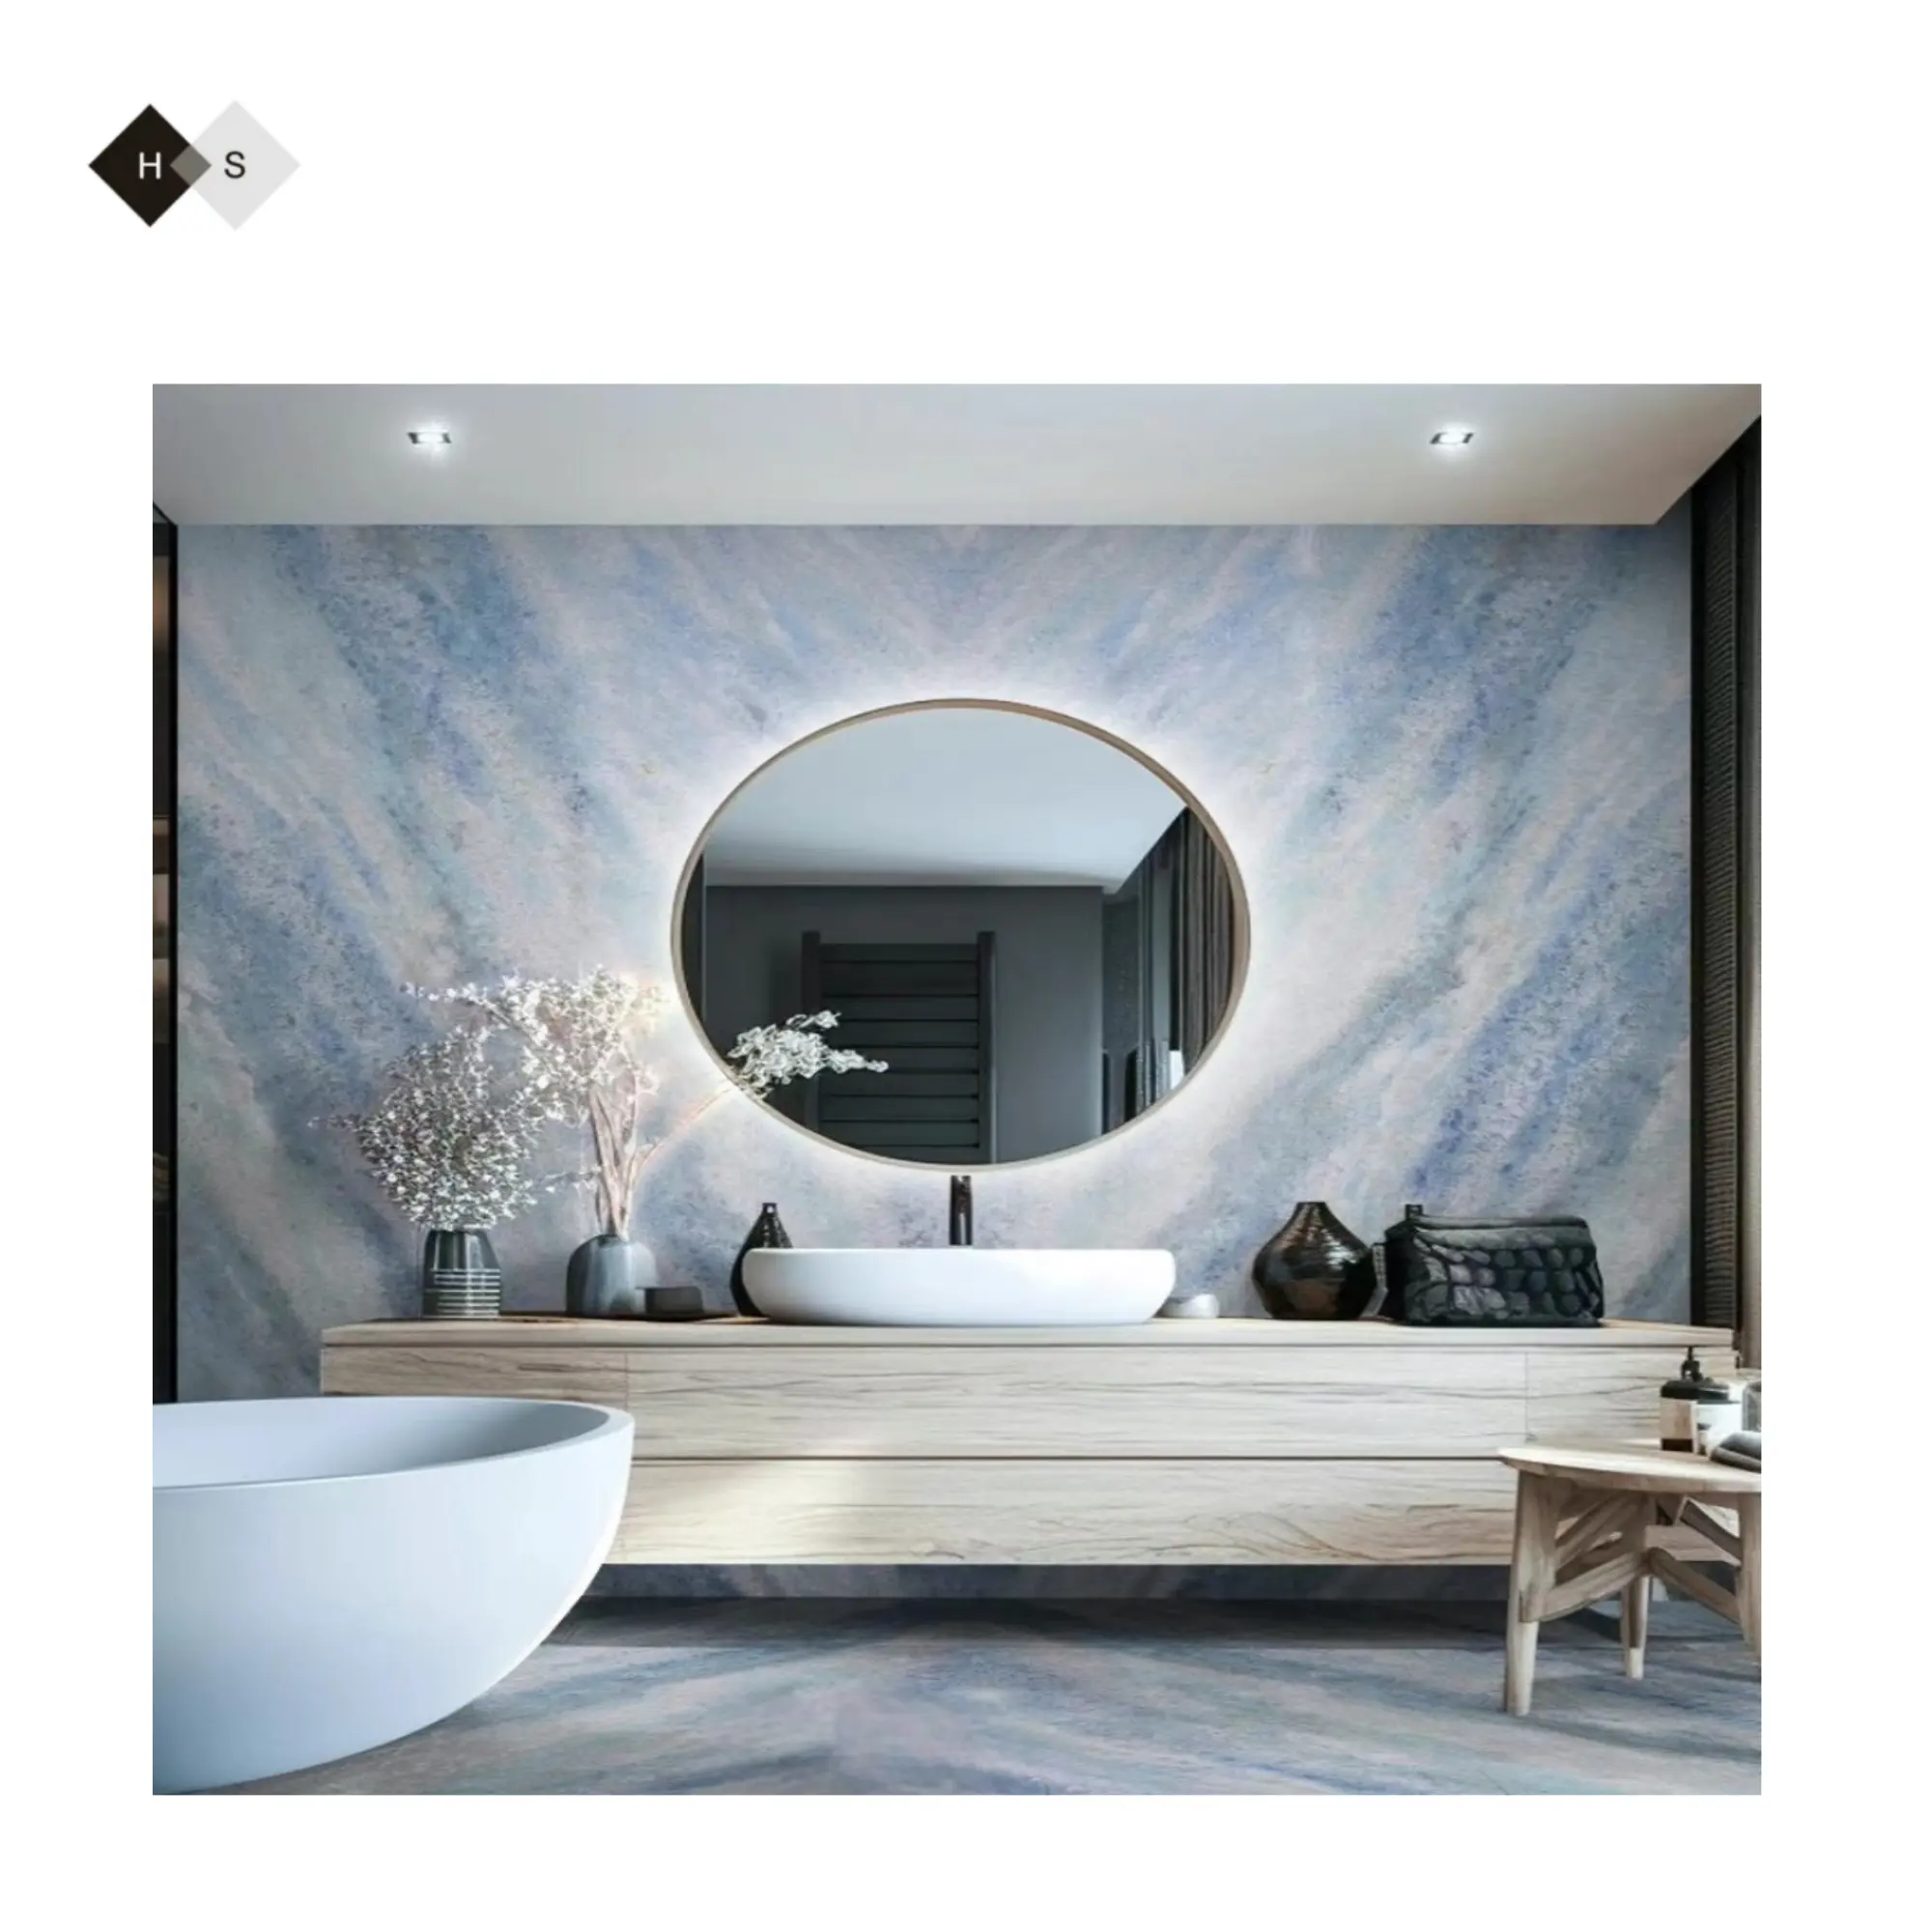 Recomendar Azulejo de baño de mármol Pared de mármol y pisos Colas Piscina y azulejo de pared de cocina